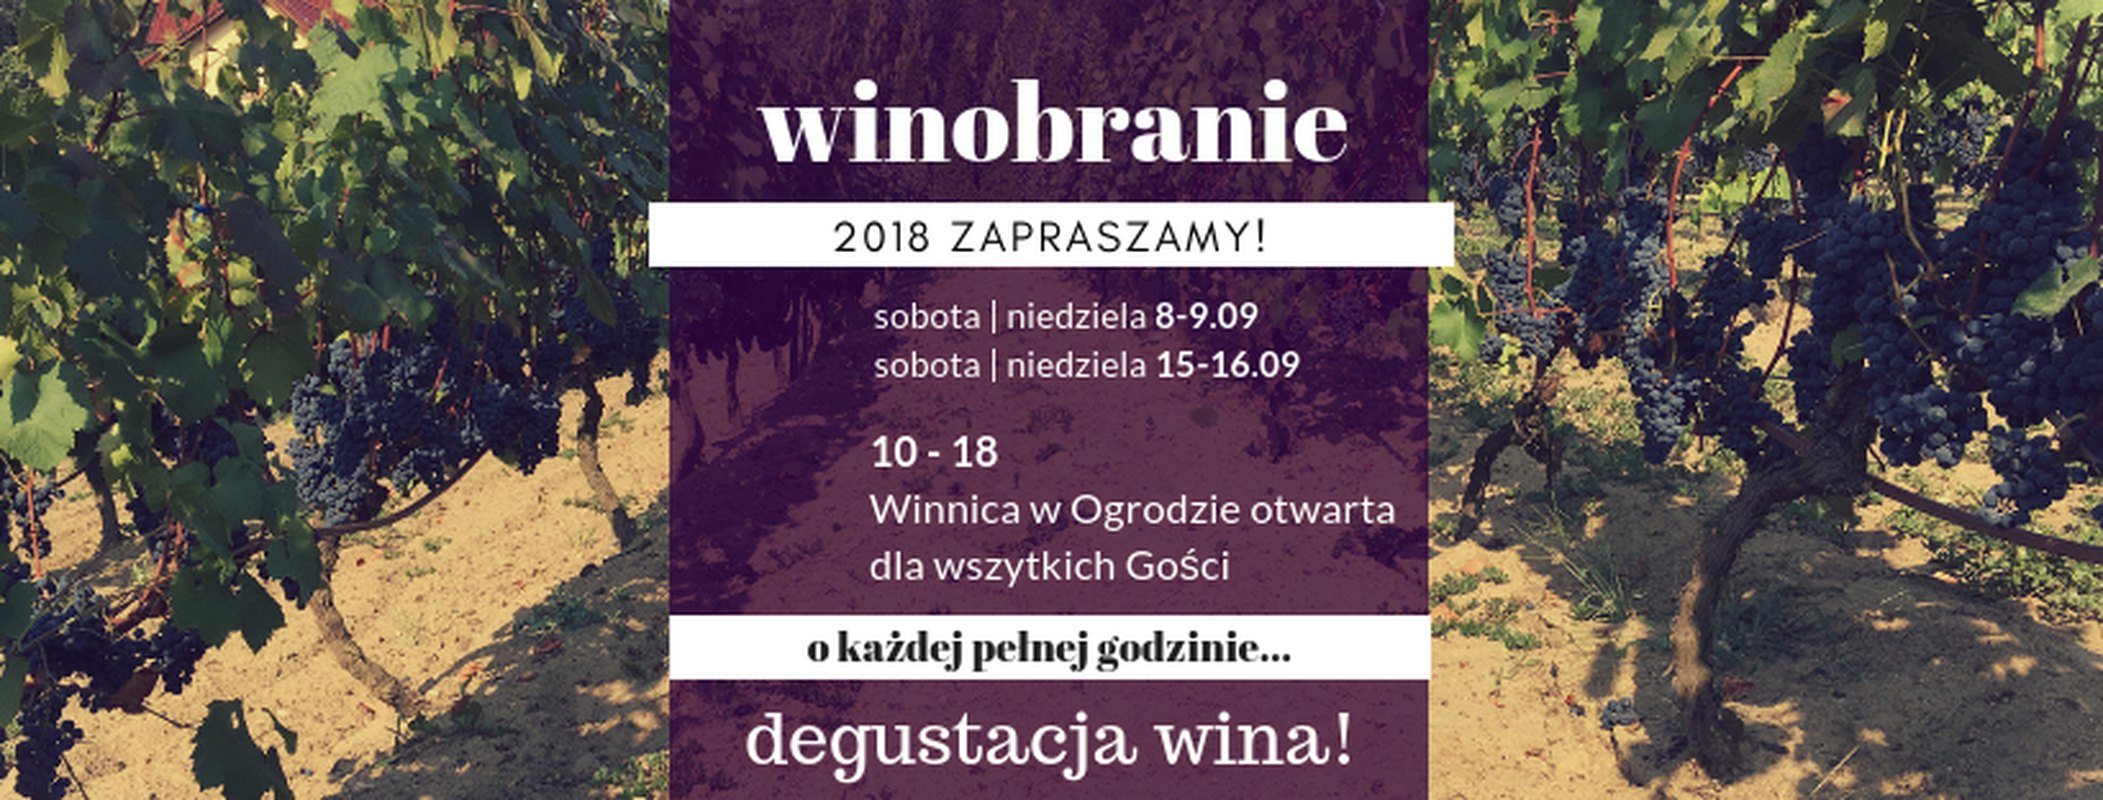 Winobranie II 2018 - Winnca W Ogrodzie